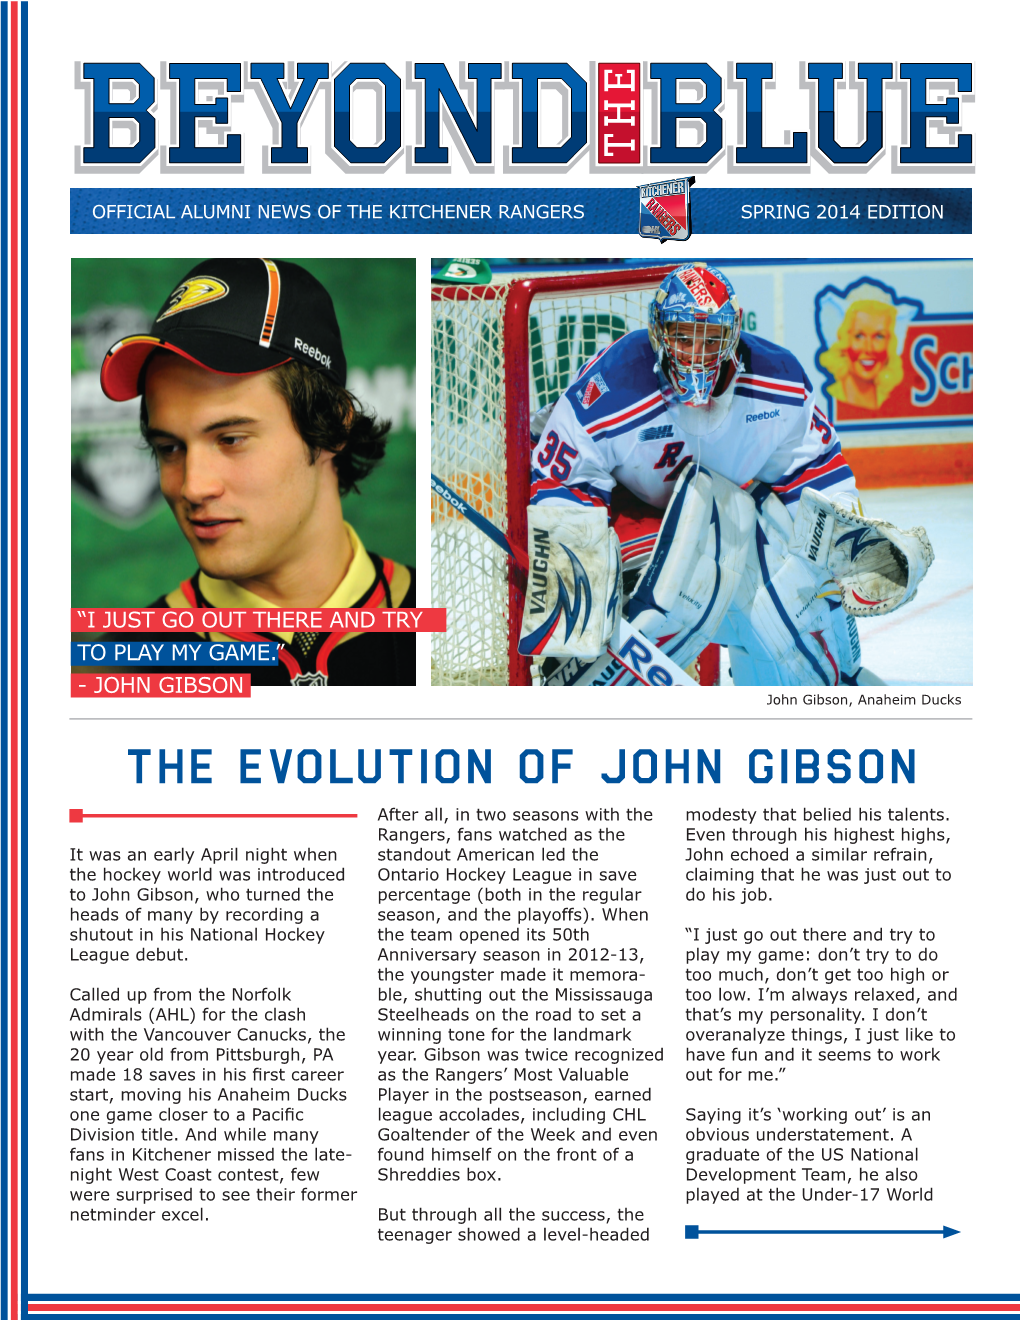 The Evolution of John Gibson